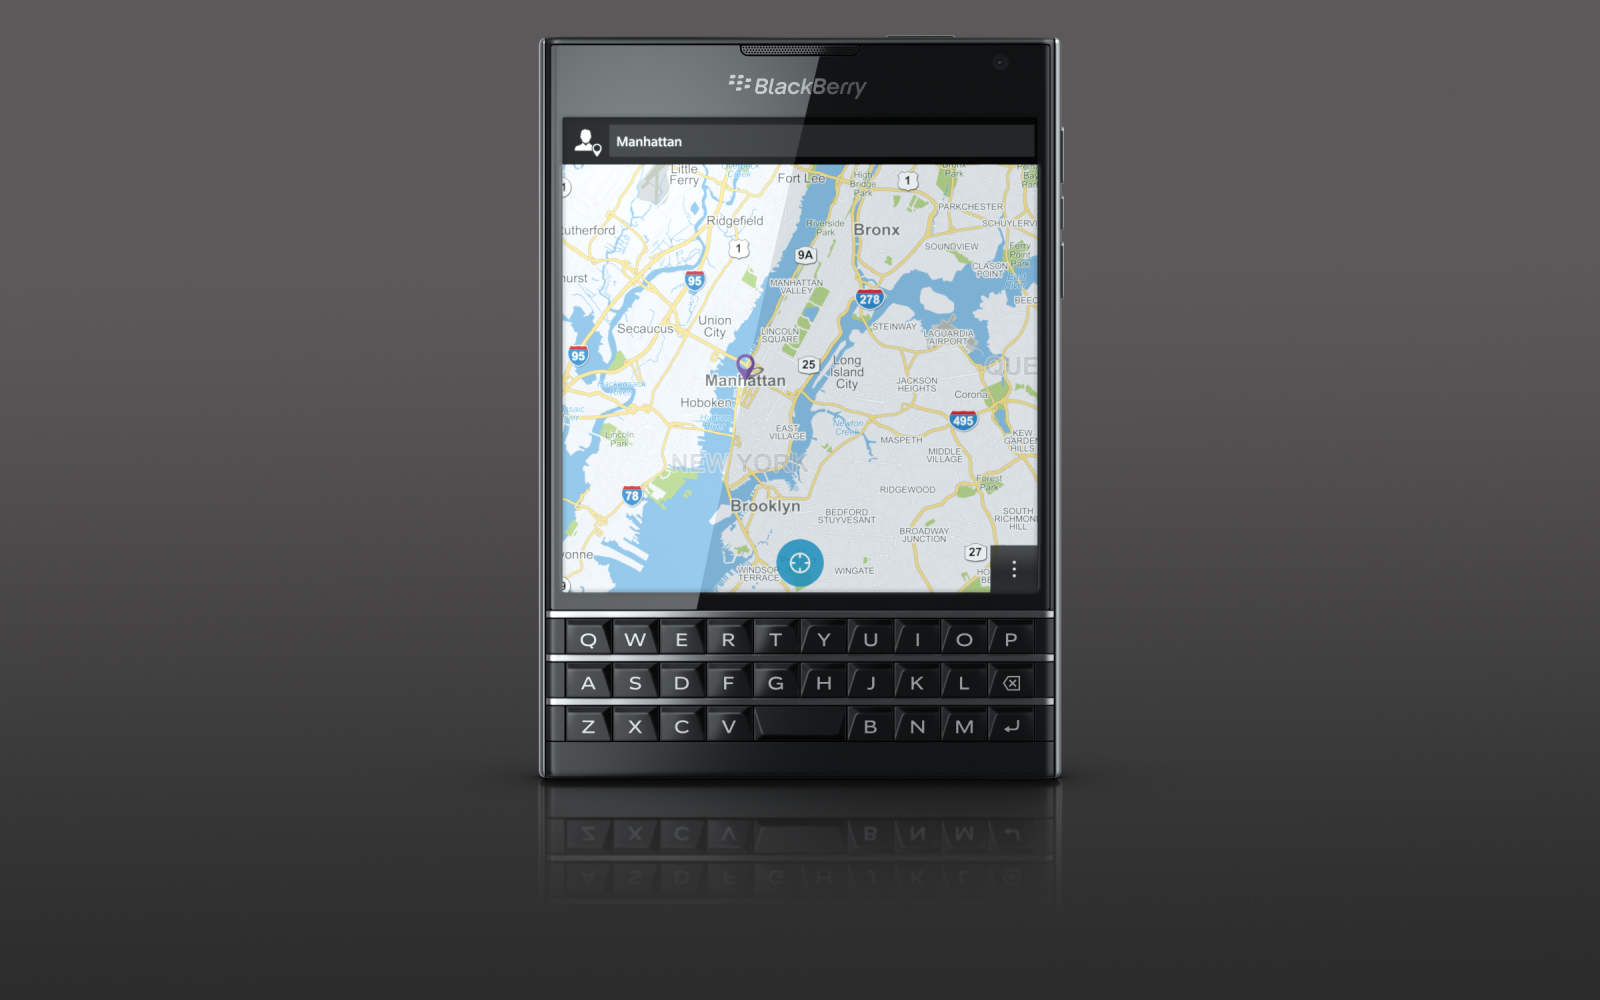 Blackberry passport sqw100-1 software download